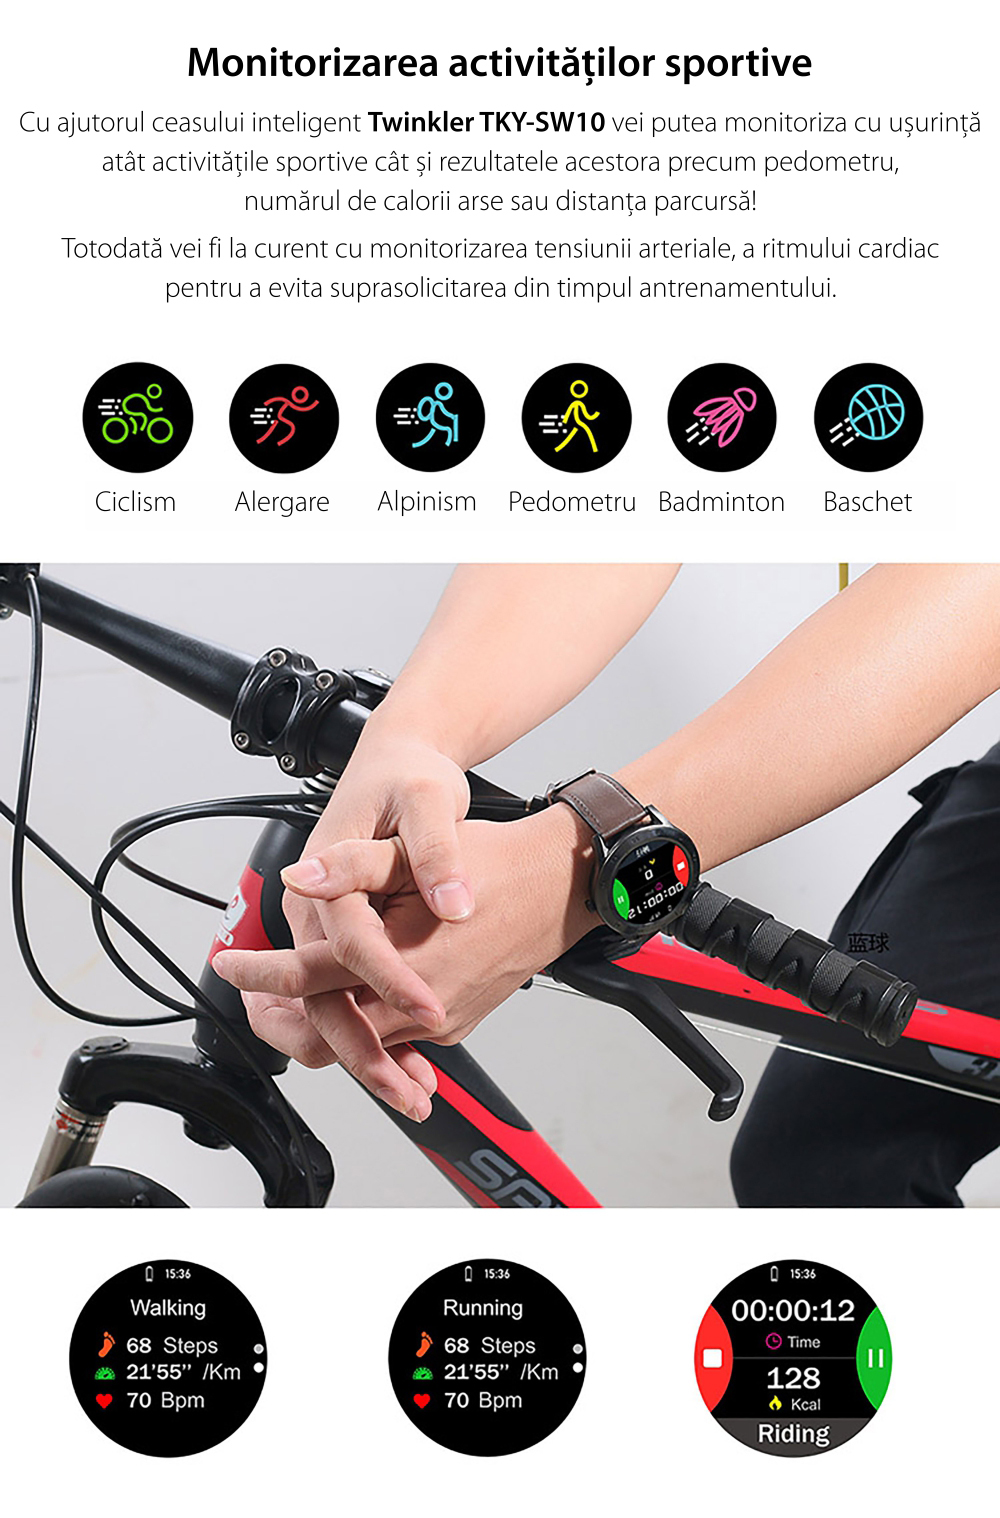 Ceas Smartwatch Twinkler TKY-SW10 cu functie de monitorizare ritm cardiac, Tensiune arteriala, EKG, Istoric apeluri, Agenda, Apelare prin Bluetooth, Metal, Negru